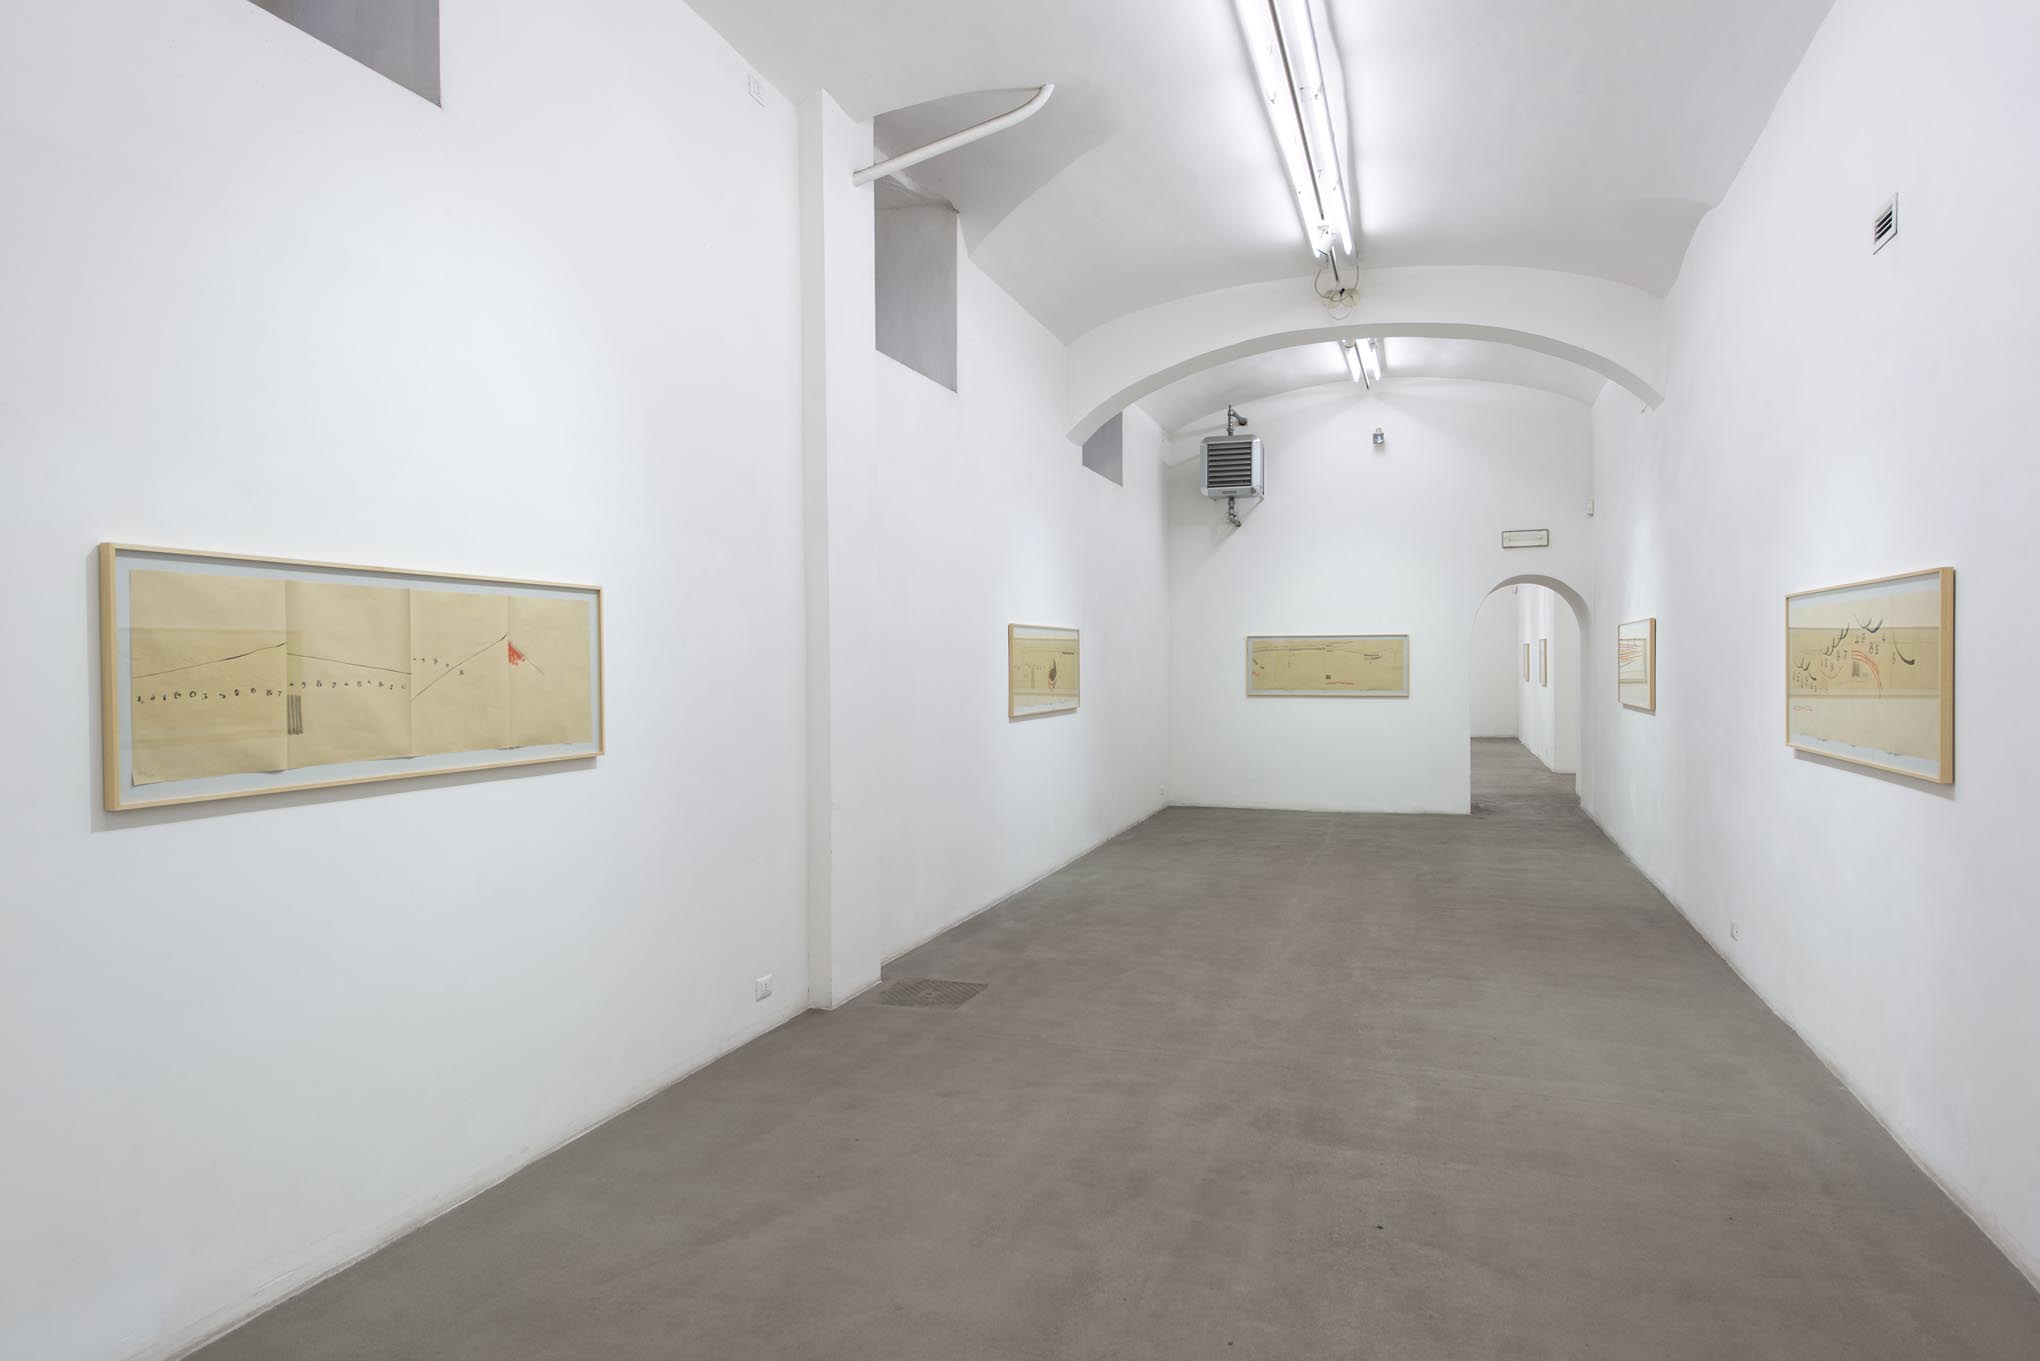 15. Giorgio Griffa: Works on Paper
Installation view, Roma, 2014, foto Giorgio Benni